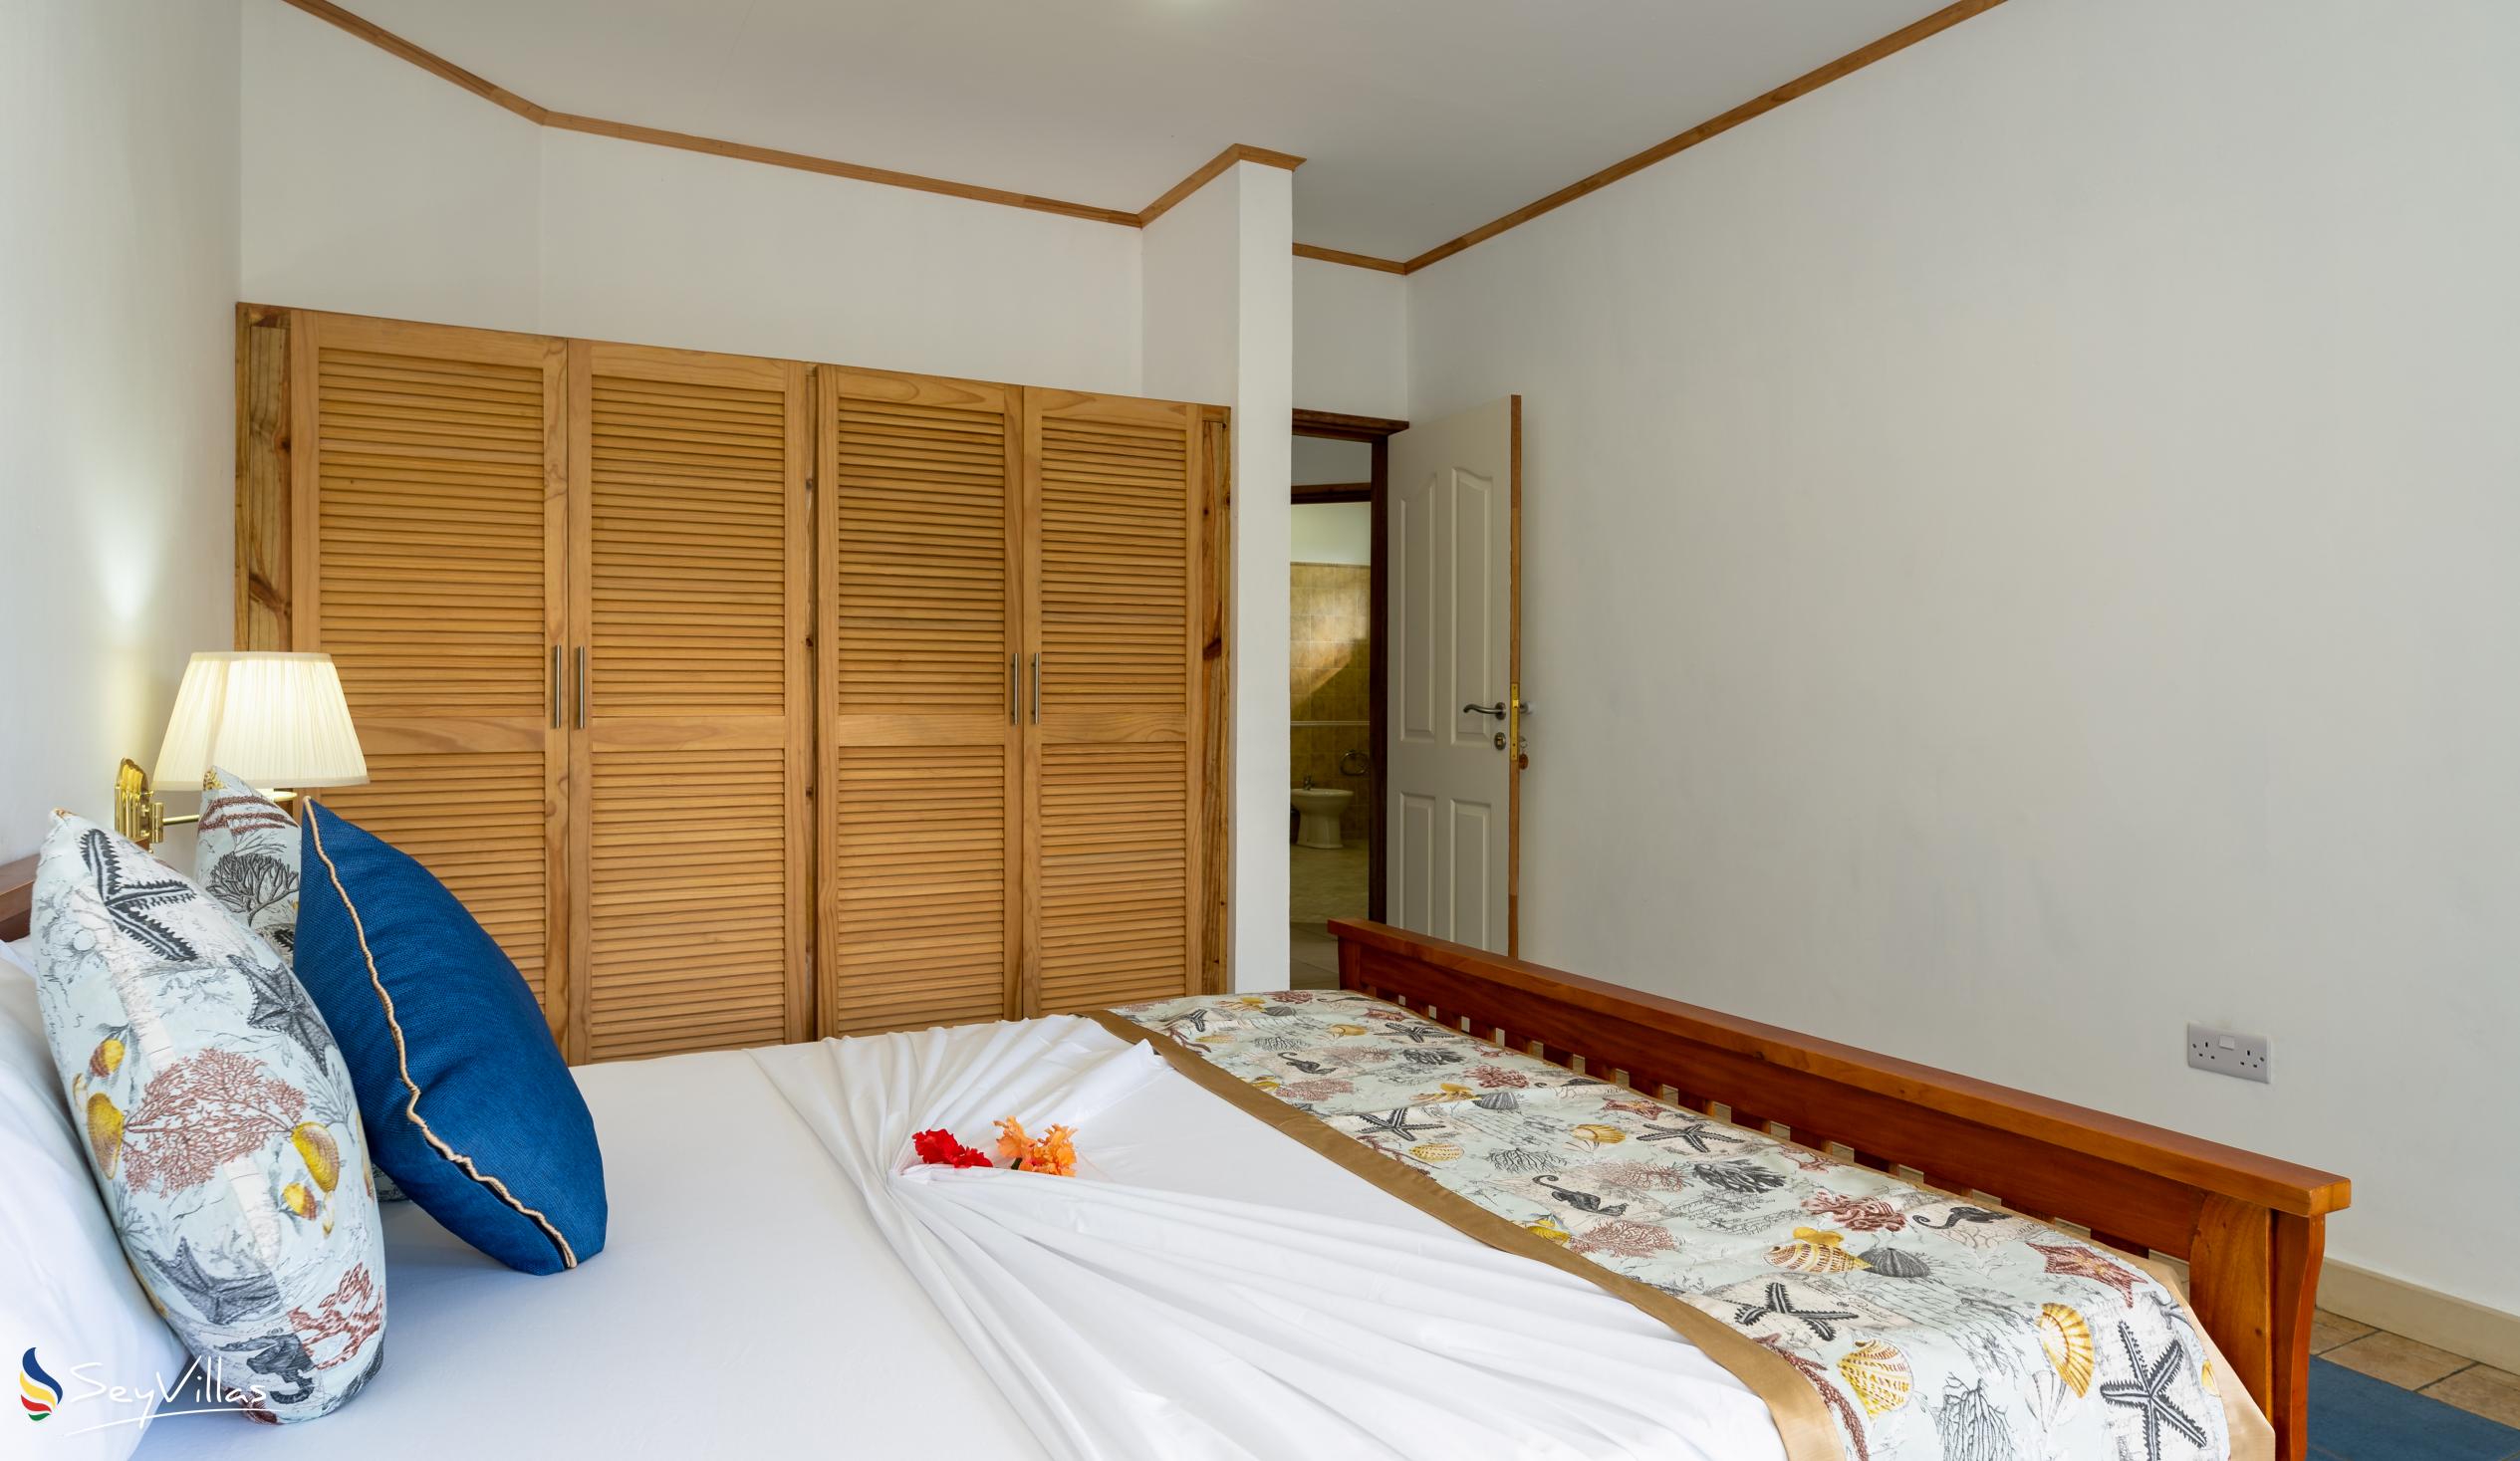 Foto 85: 340 Degrees Mountain View Apartments - Appartement avec vue sur la montagne - 2 Chambres - Mahé (Seychelles)